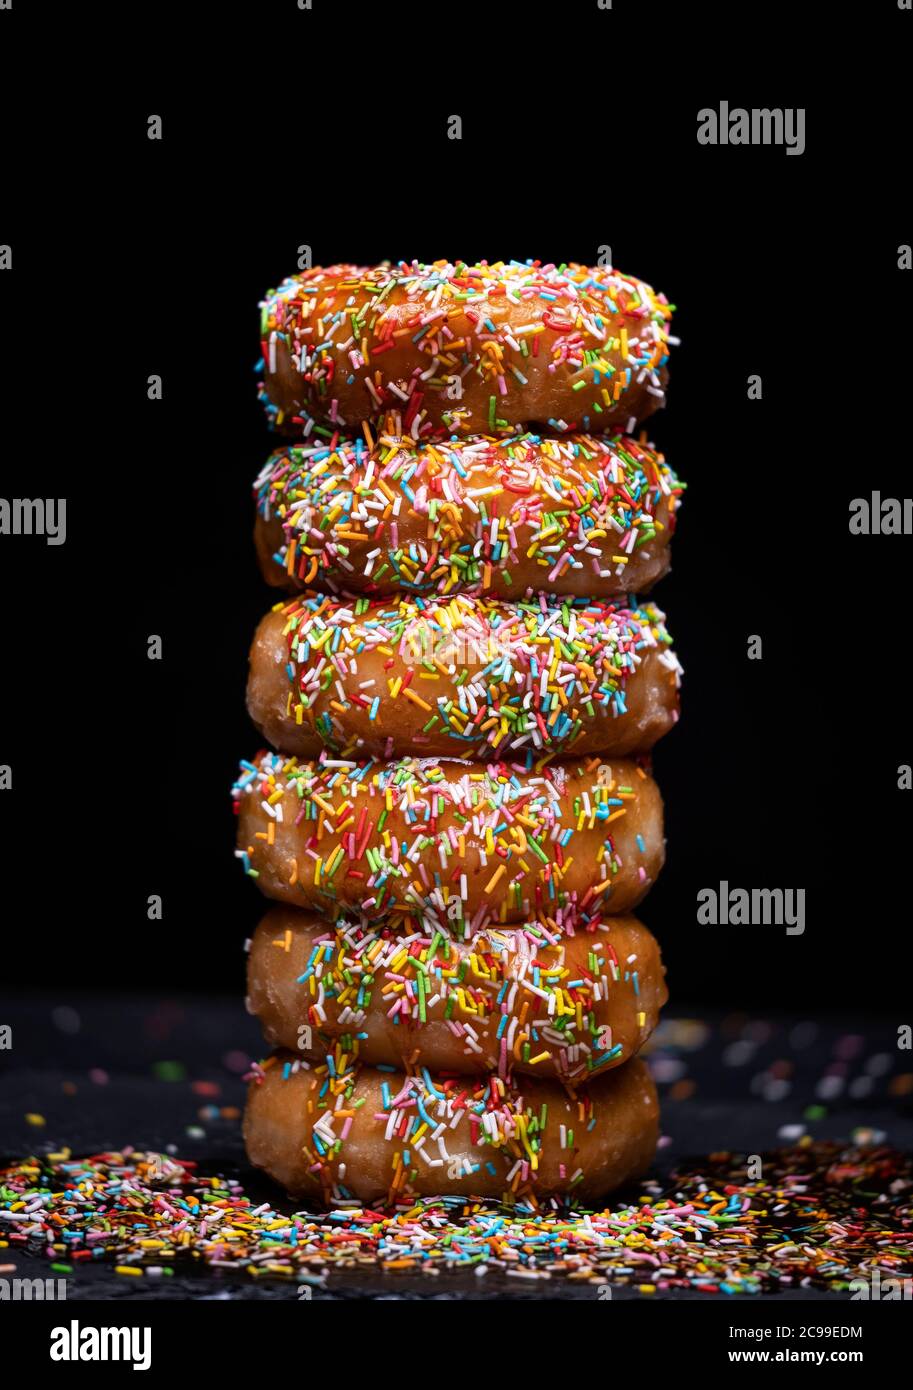 Donuts Berg mit Erdbeersirup und farbigen Belag auf schwarzem Hintergrund Stockfoto